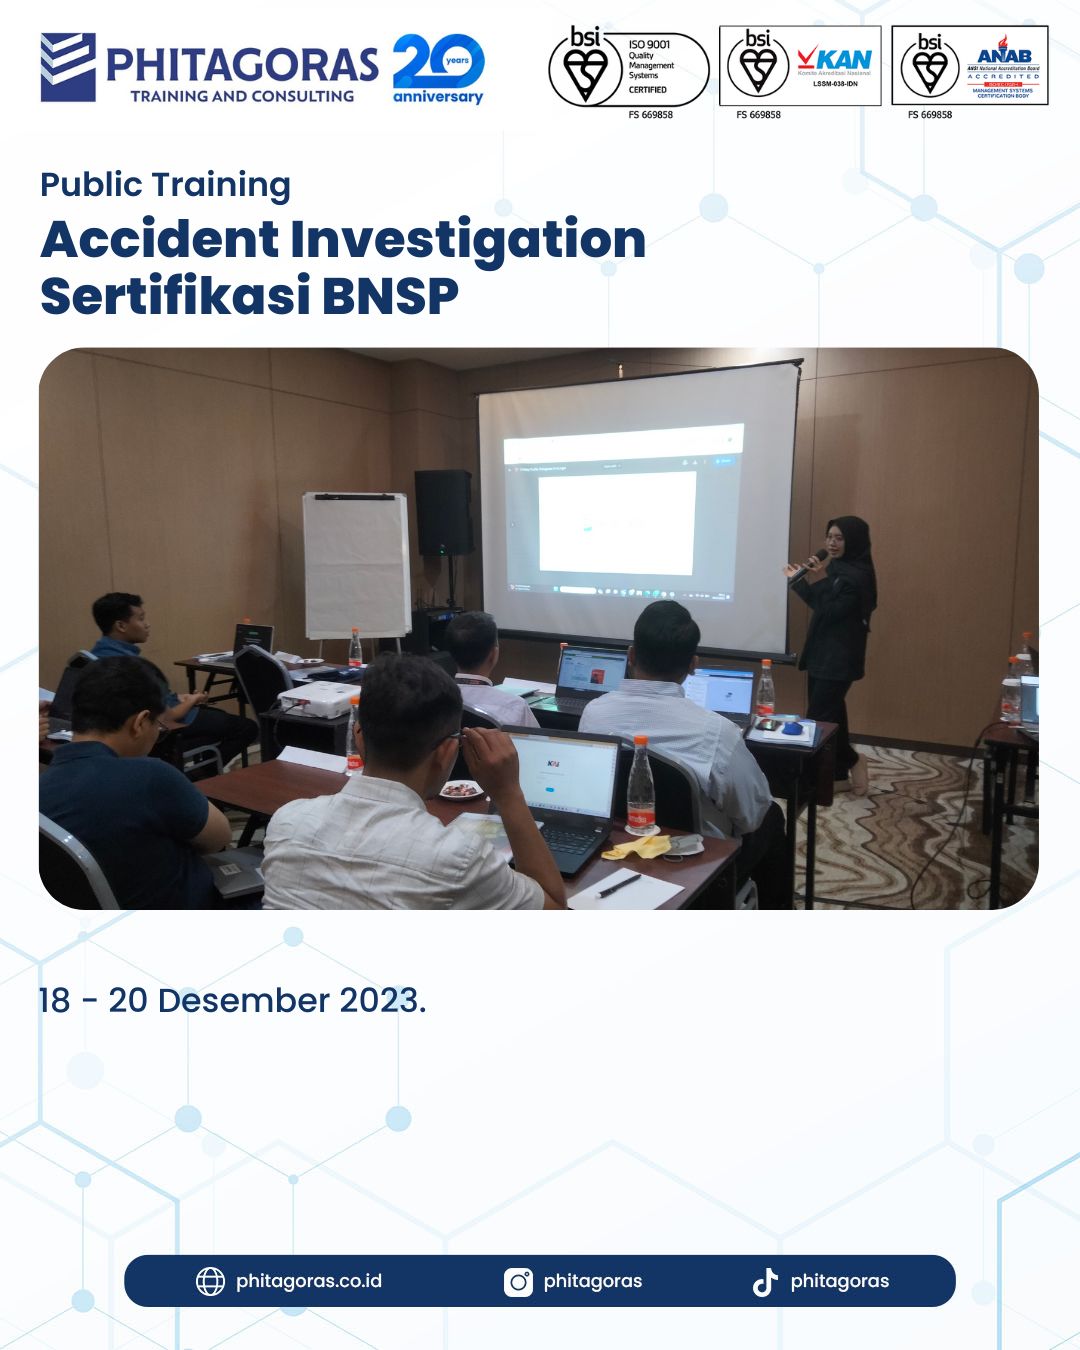 Public Training Accident Investigation Sertifikasi BNSP